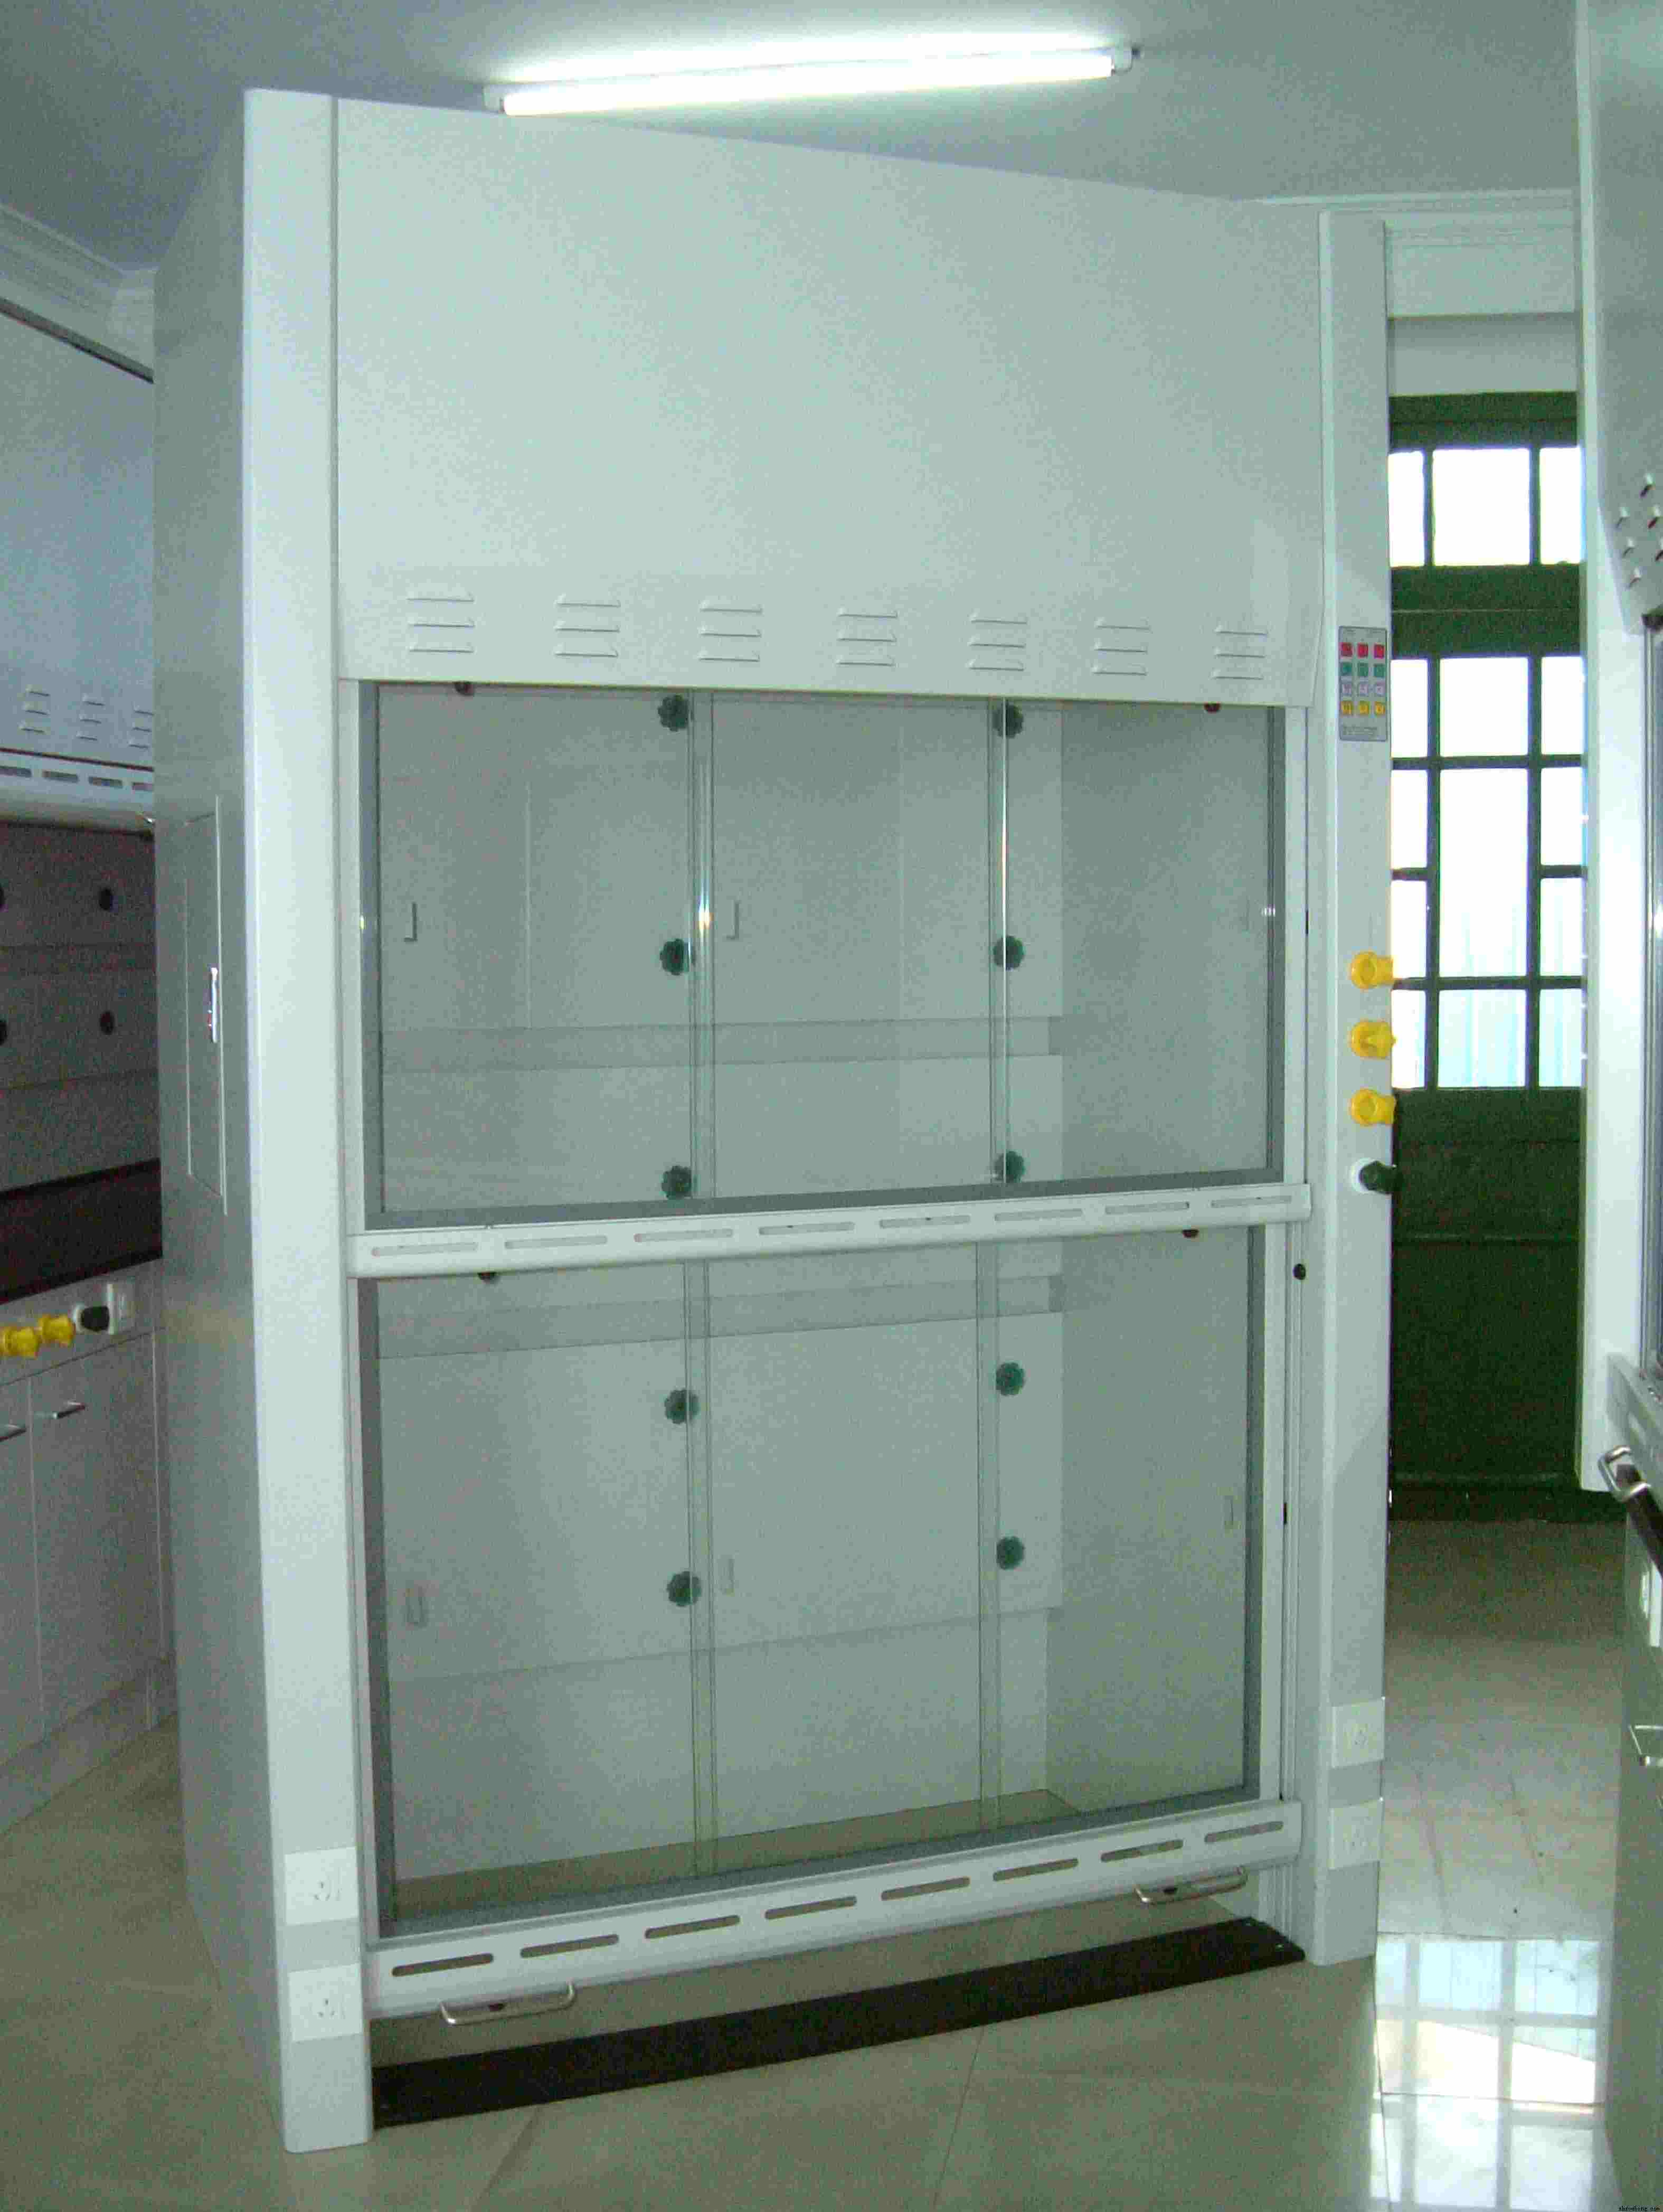 汉望实验室设备有限公司专业设计化验台排风柜洁净室无尘室